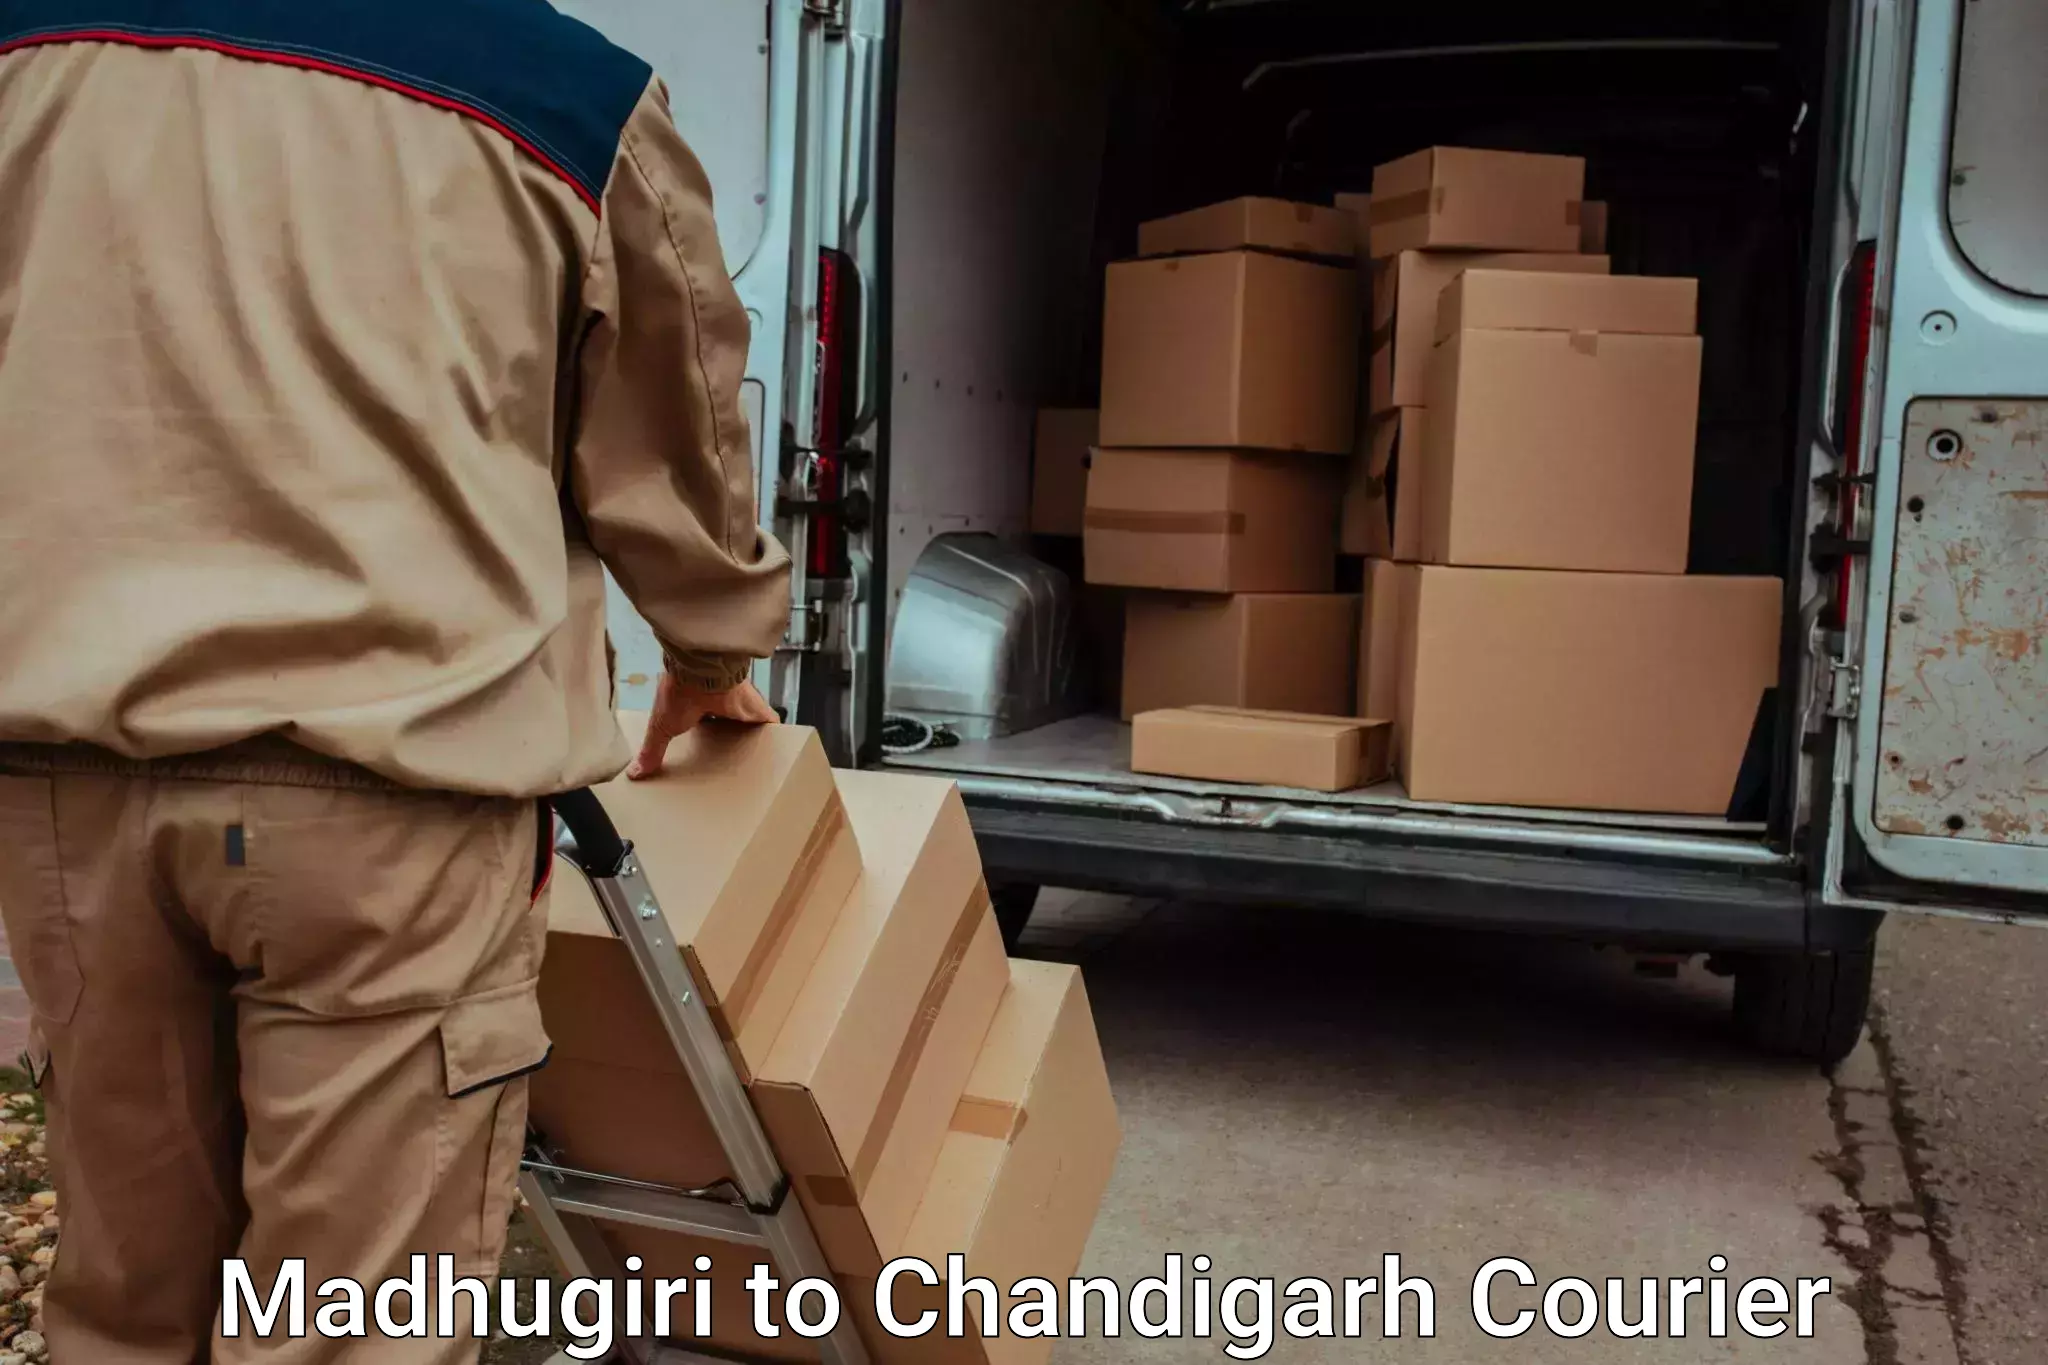 Moving and packing experts Madhugiri to Chandigarh